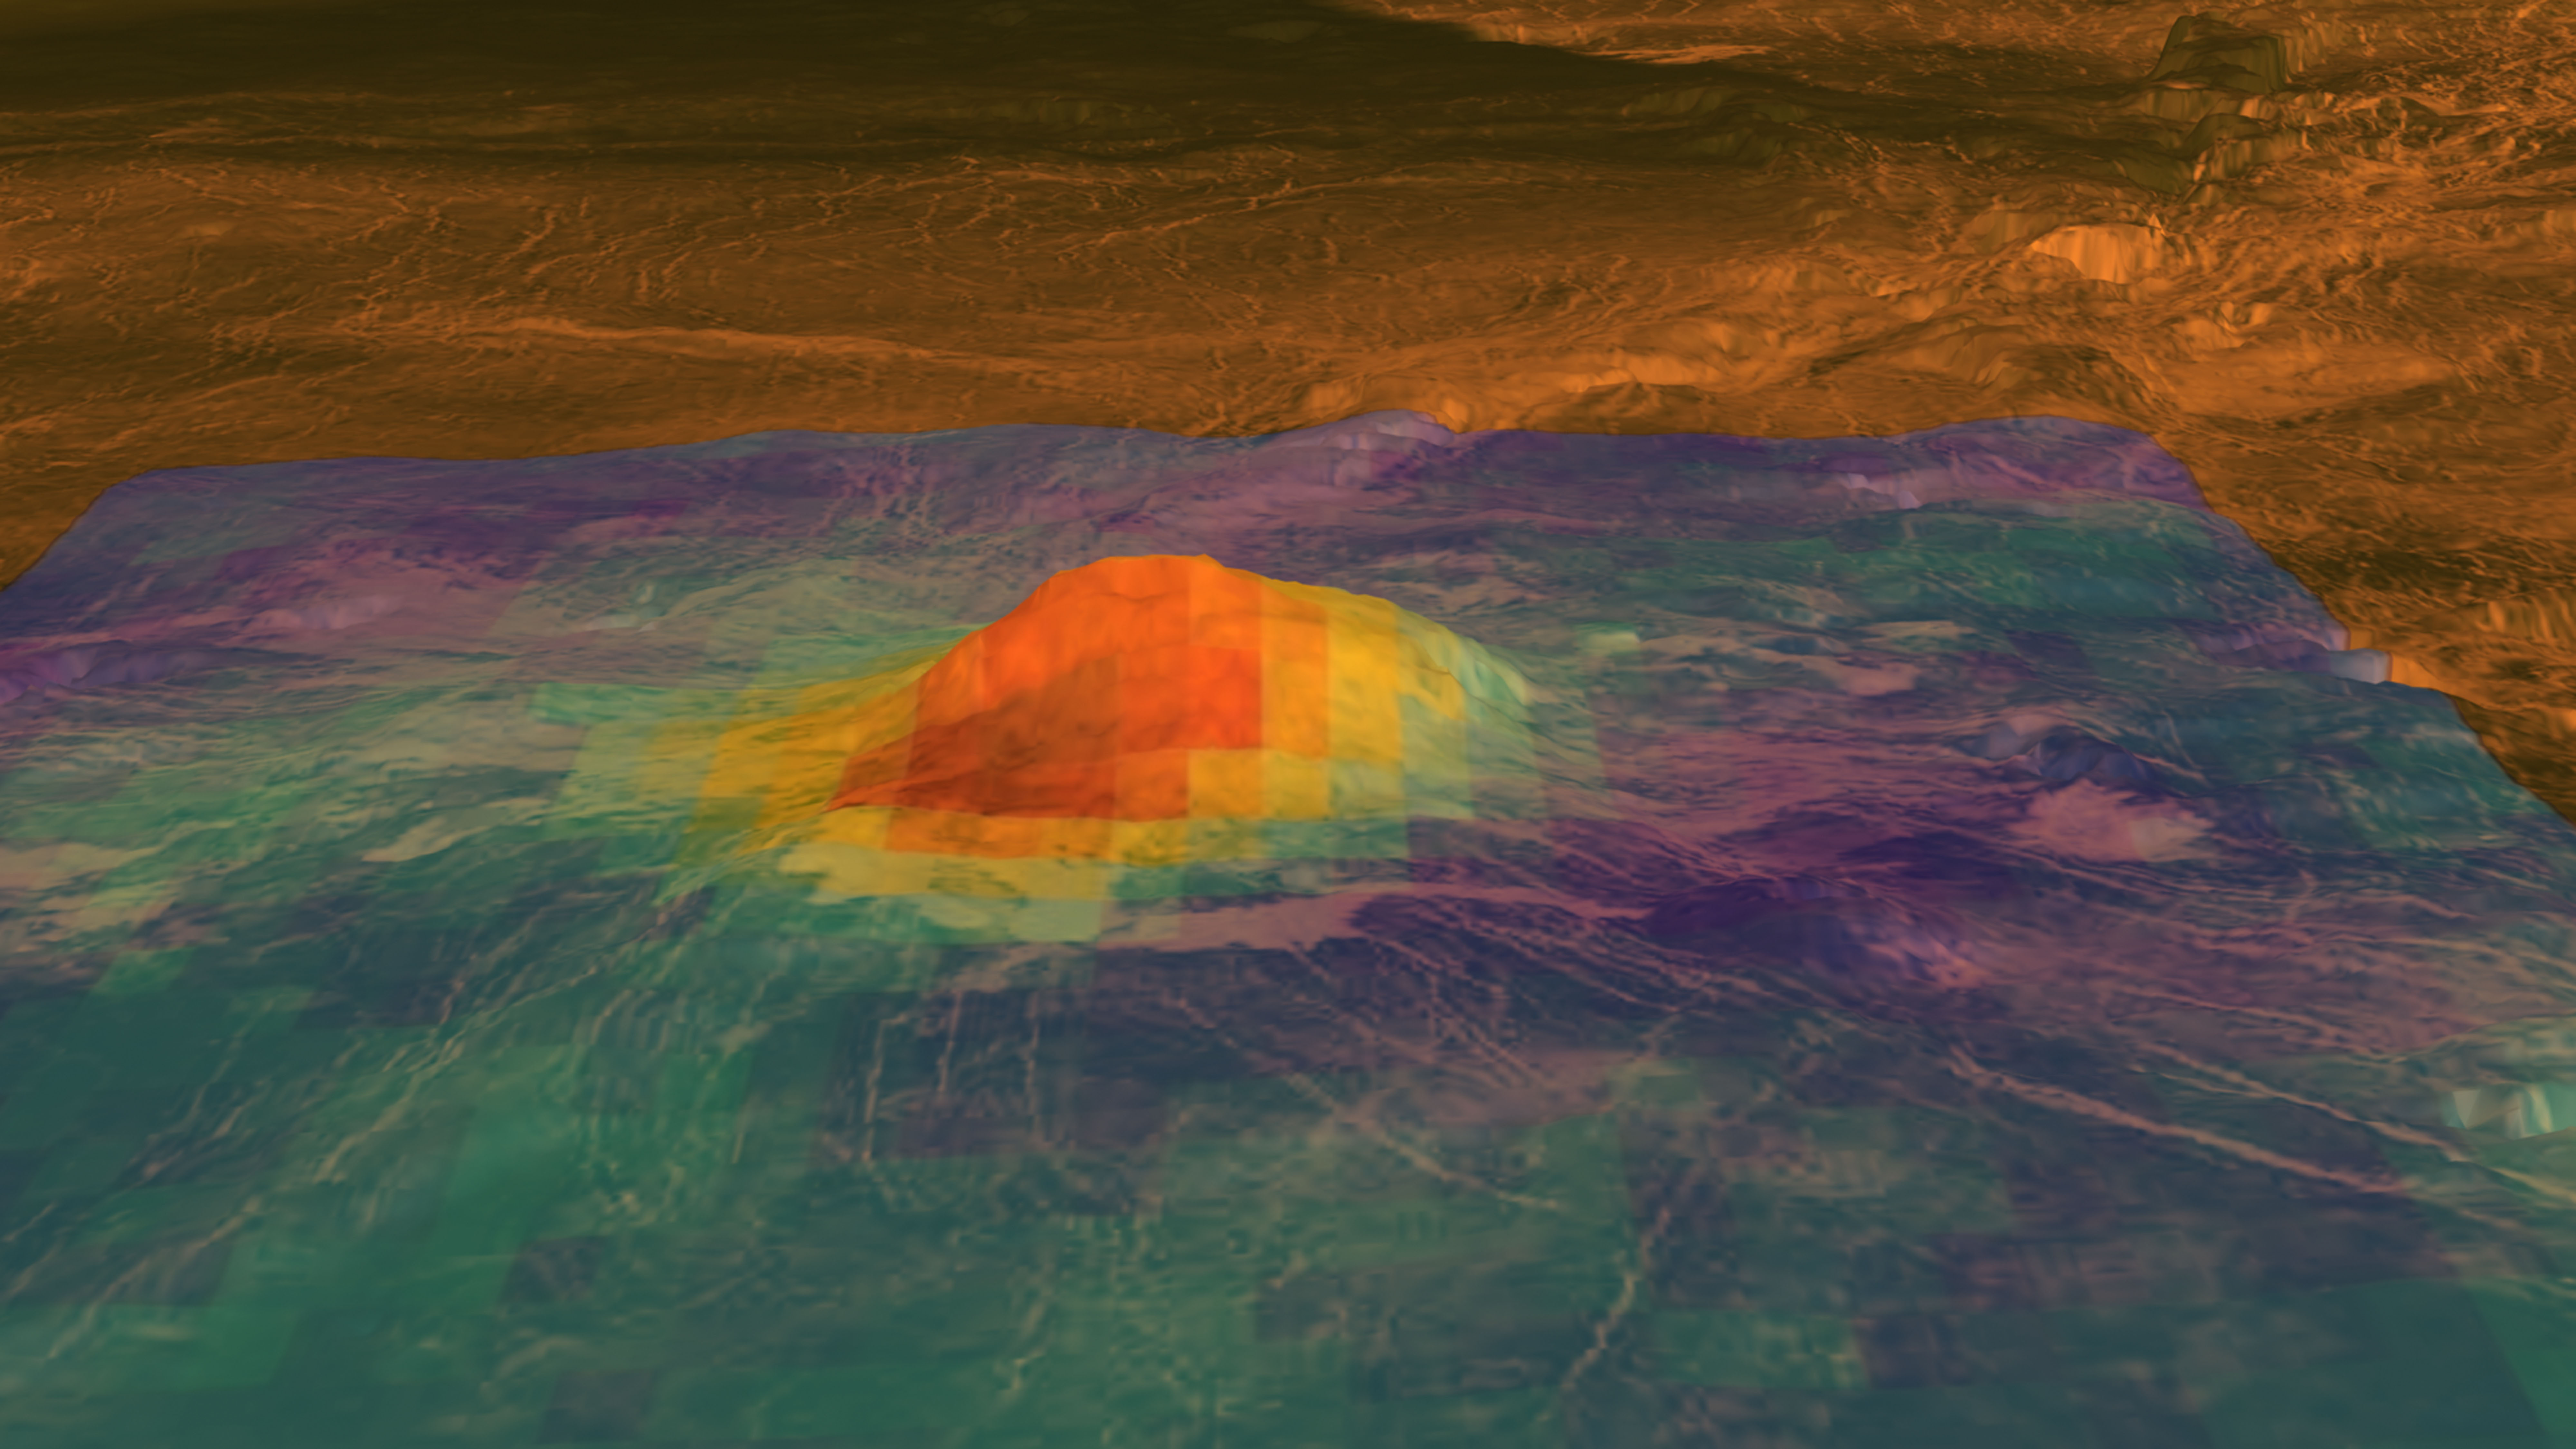 Vulkanen Idunn Mons på Venus. Foto: ESA/NASA/JPL